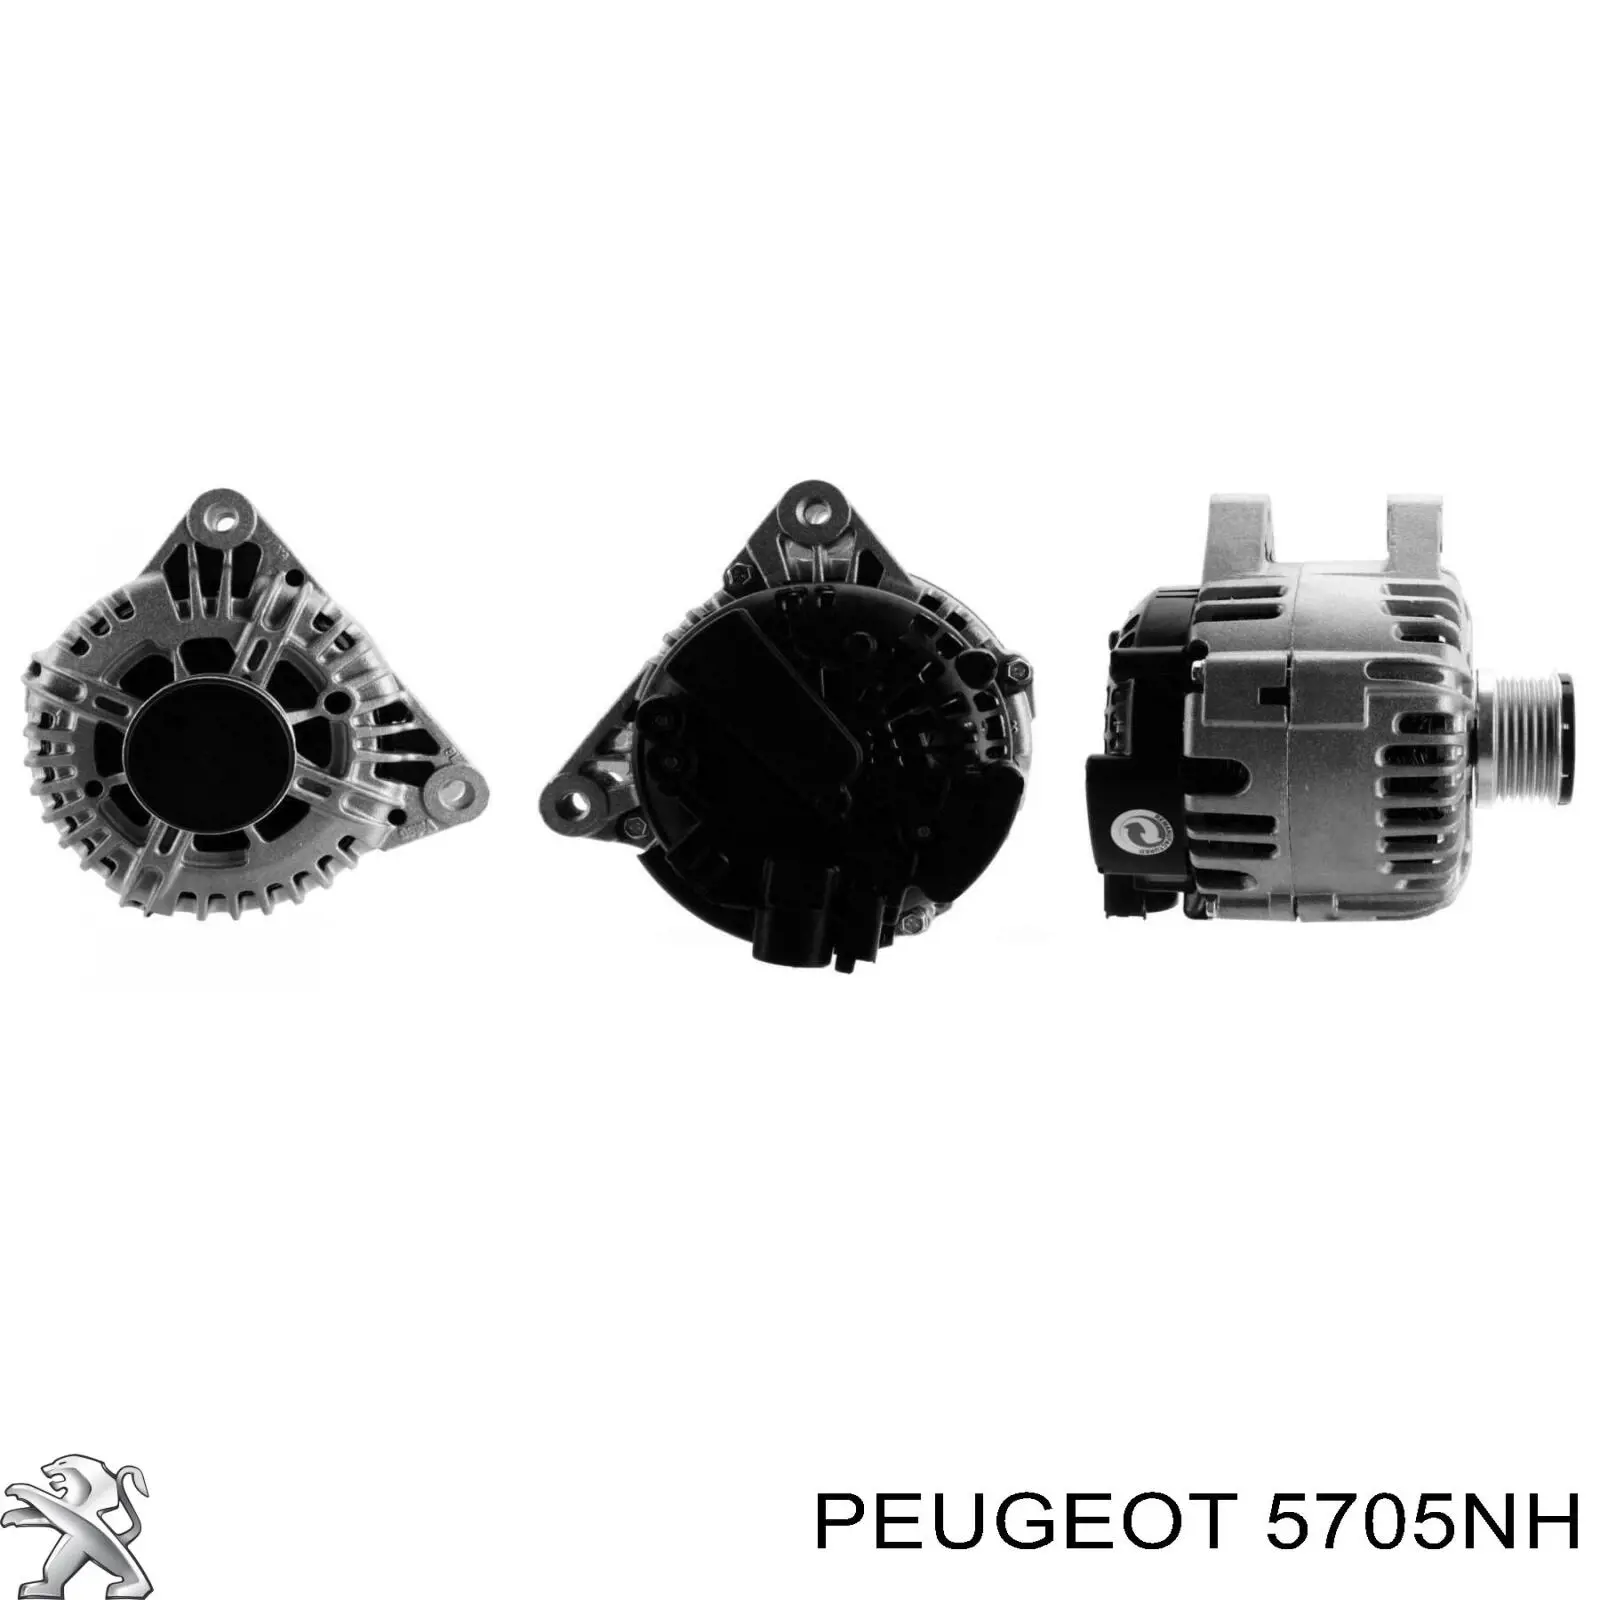 5705NH Peugeot/Citroen gerador